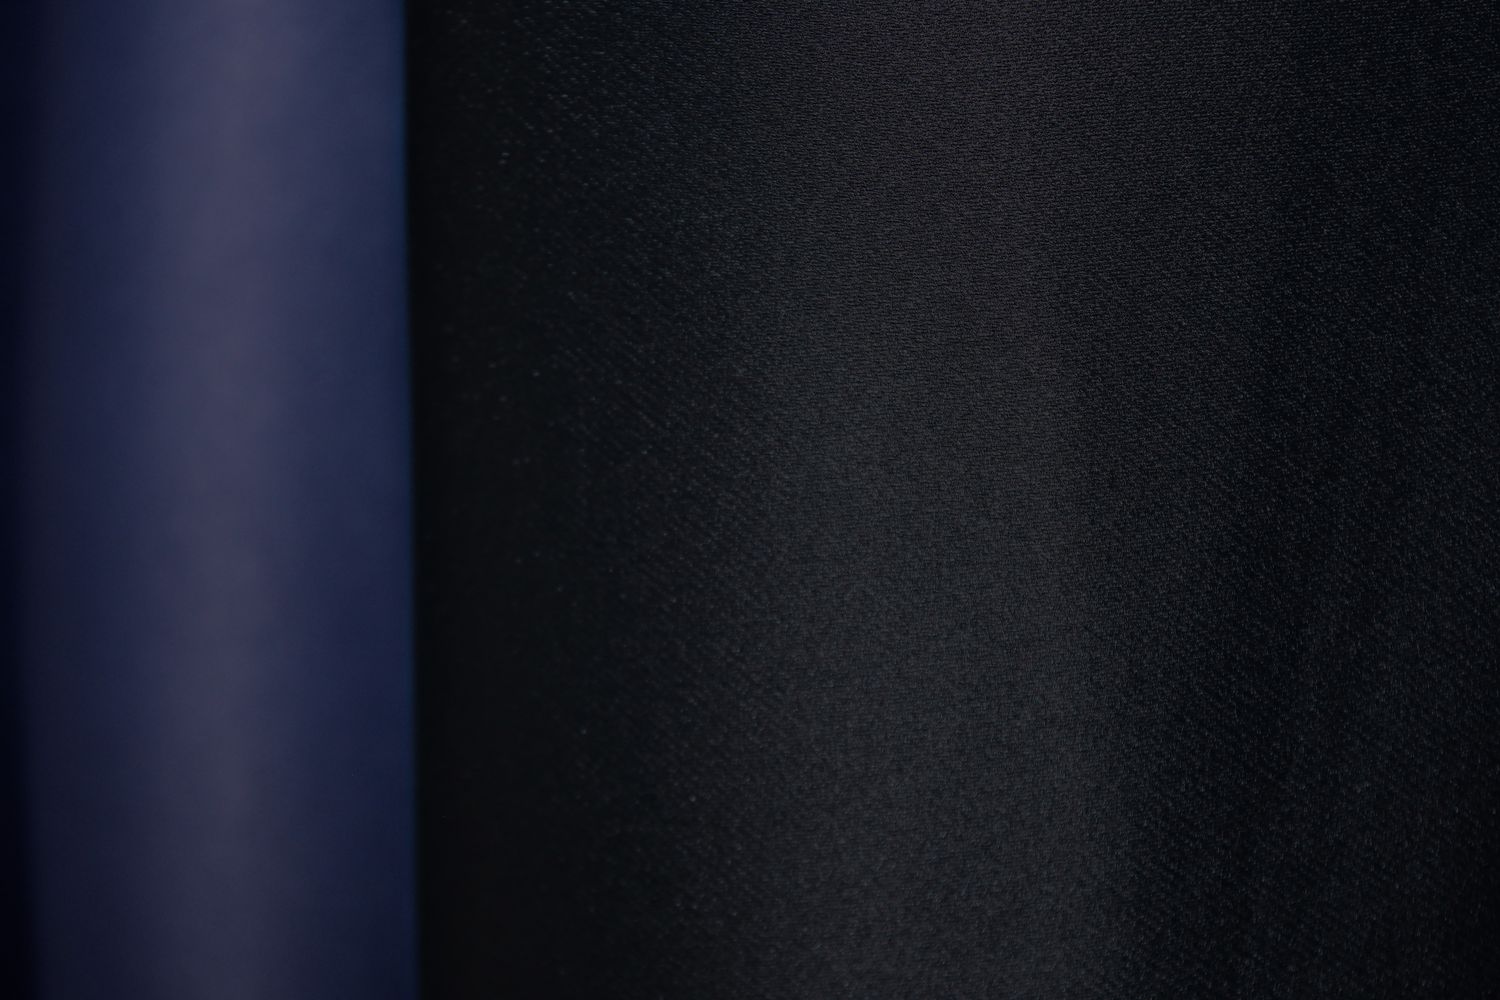 Комбинированные шторы блэкаут цвет черный с синим и светло-серым 016дк (908-831-826ш), Черный с синим и светло-серым, Комплект штор (2 шт. 1,5х2,7 м.), Классические, Длинные, 1,5 м., 2,7 м., 150, 270, 2 - 3 м., В комплекте 2 шт., Тесьма